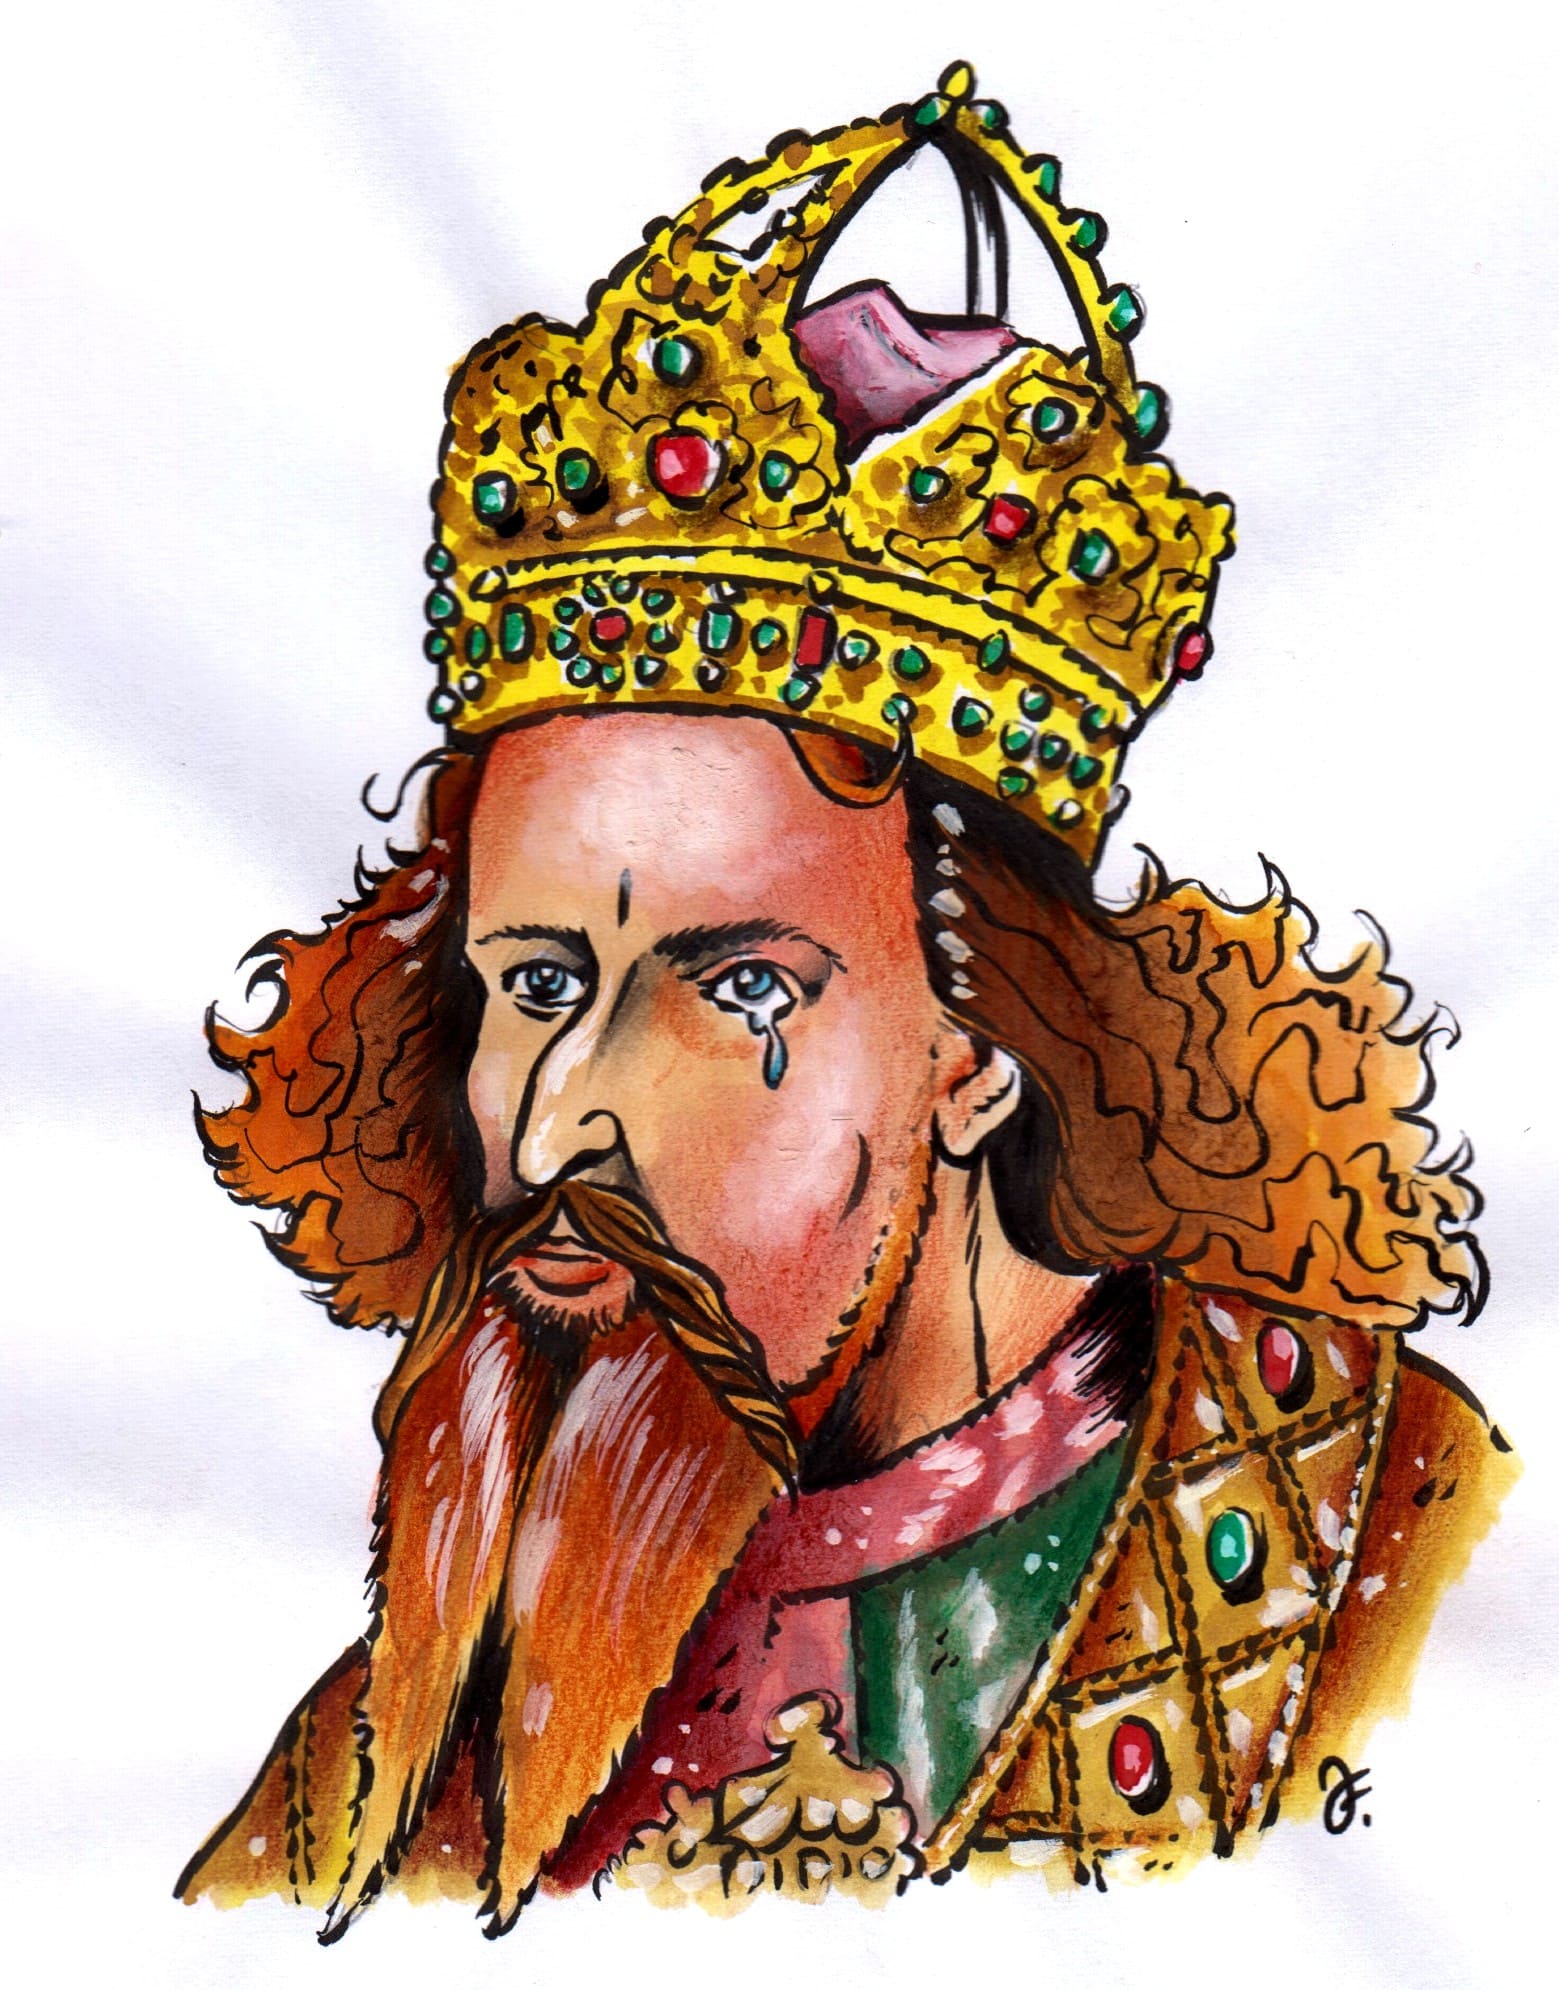 Zklamaný císař Zikmund Lucemburský plakal možná nad vítkovskou porážkou ještě při své červencové korunovaci českým králem. (Kresba: Jiří Filípek)